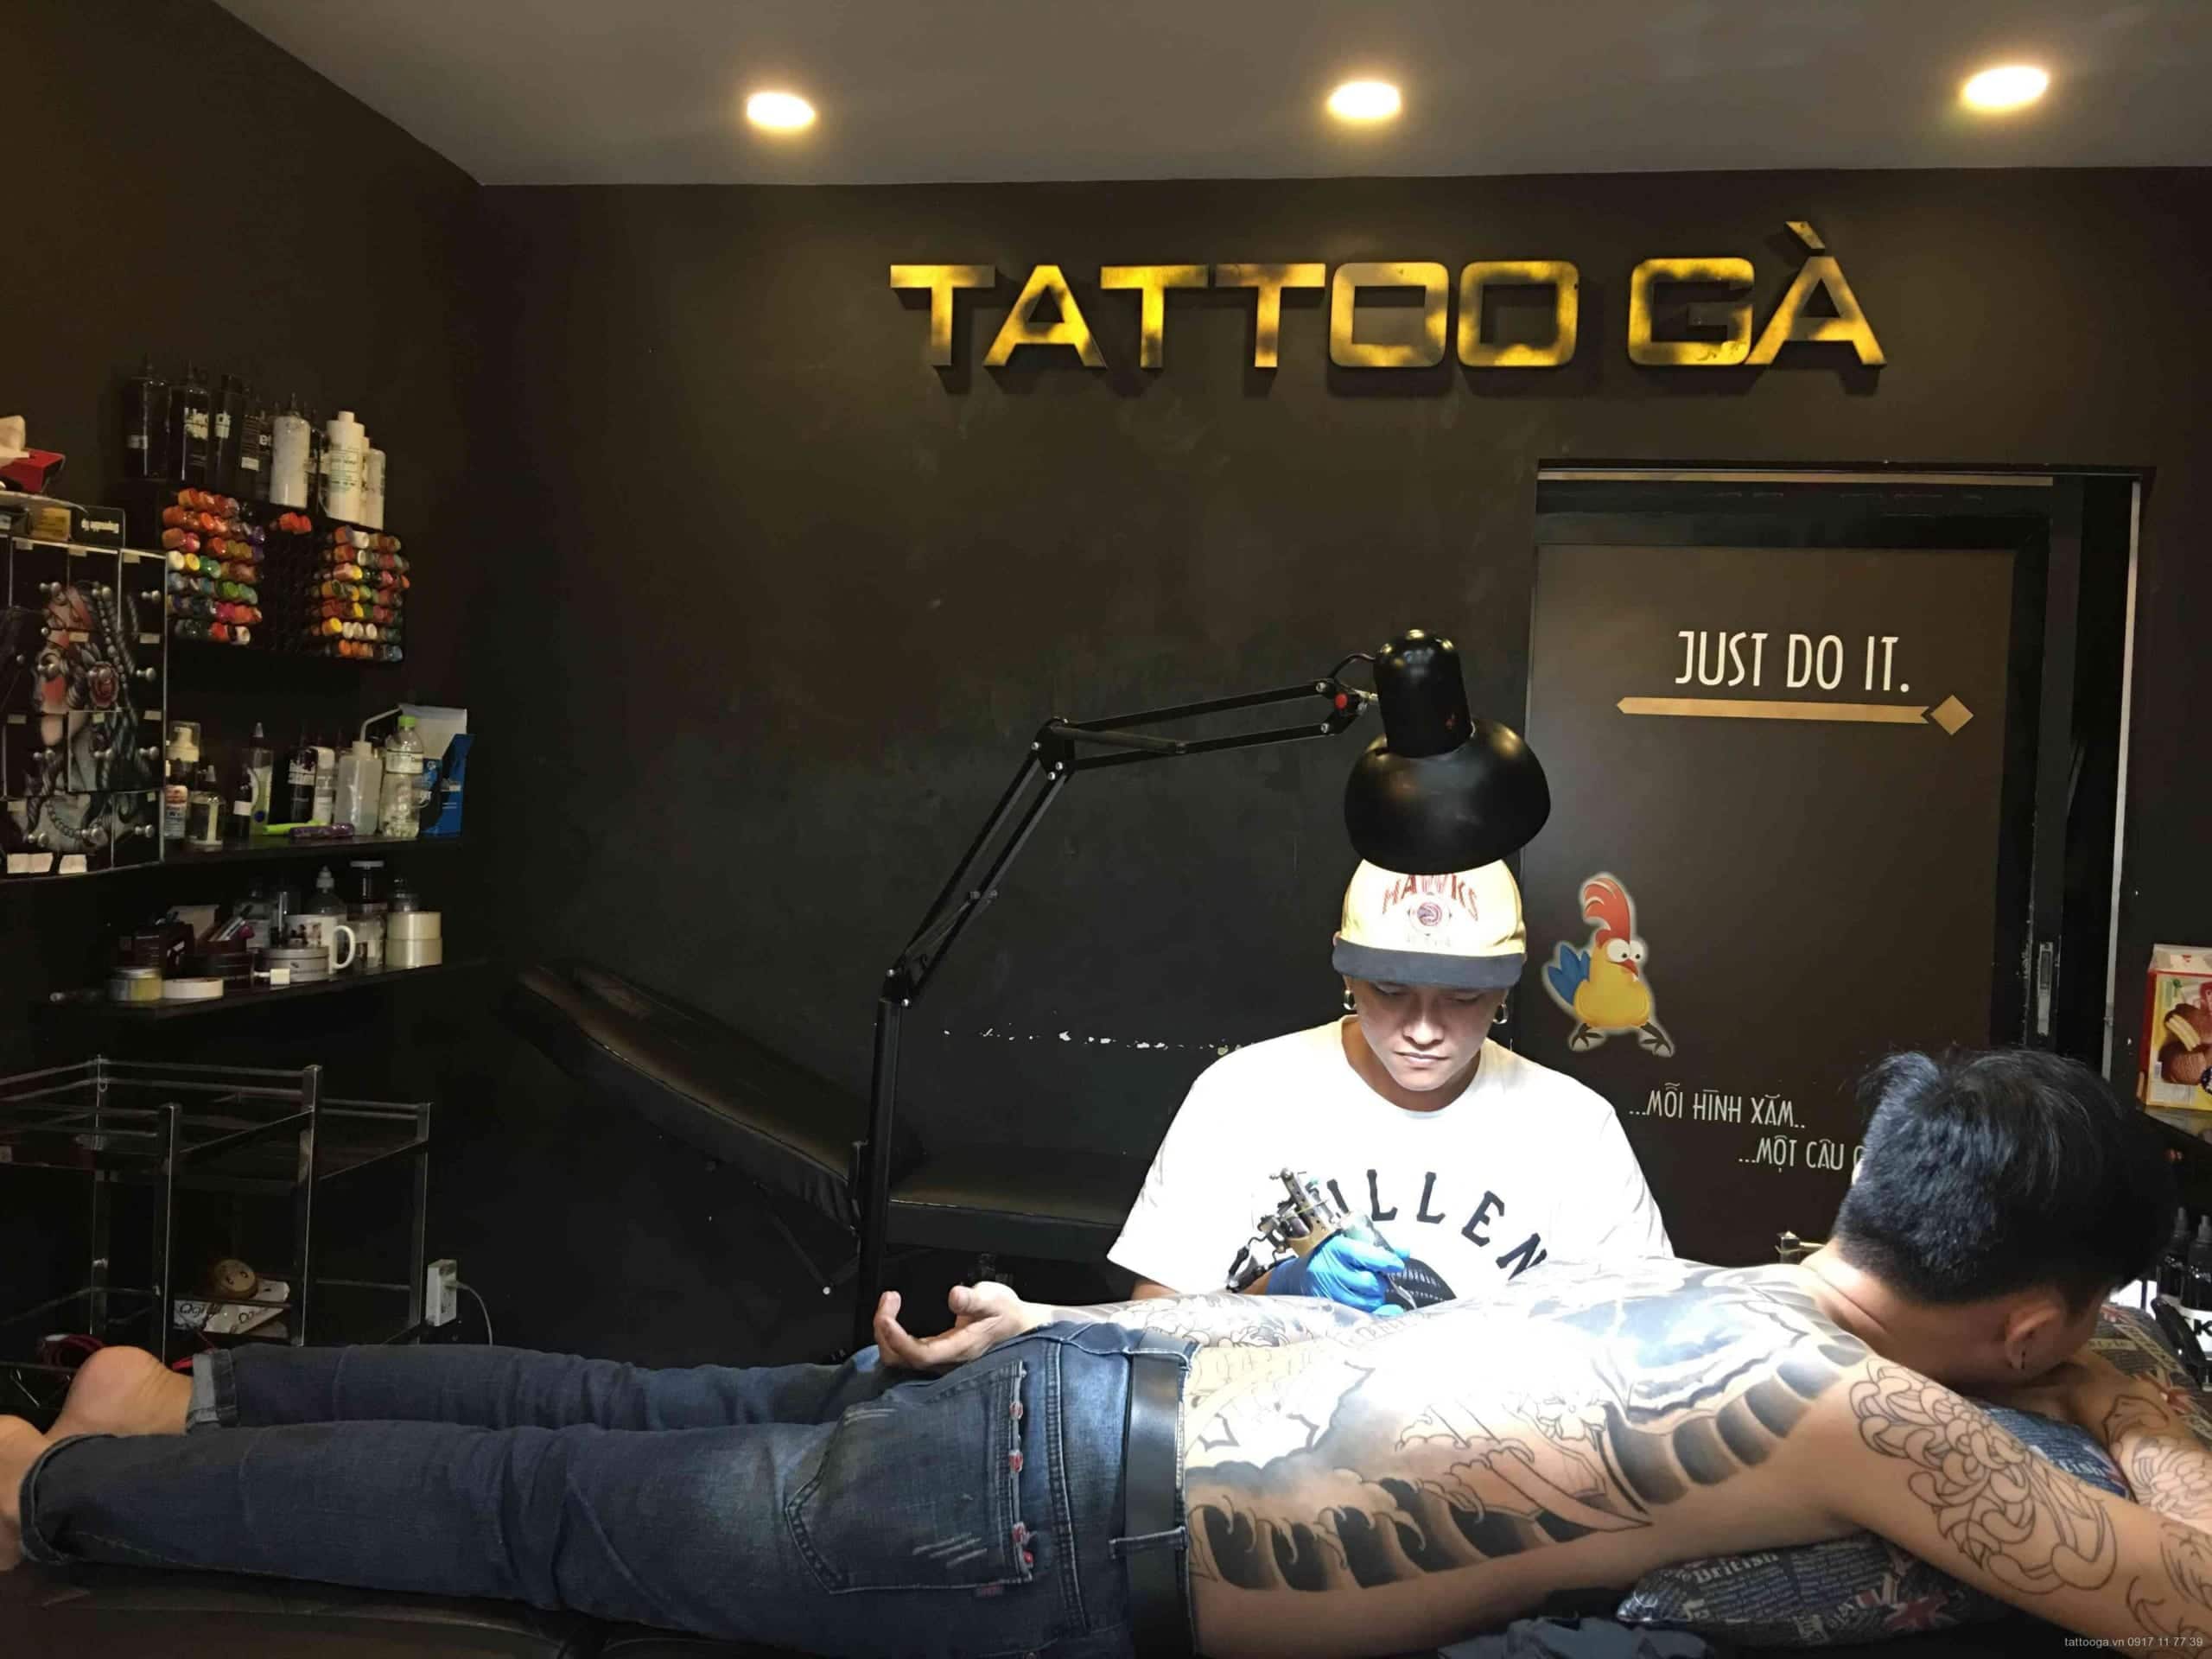 Trường dạy xăm hình nghệ thuật Tattoo Gà